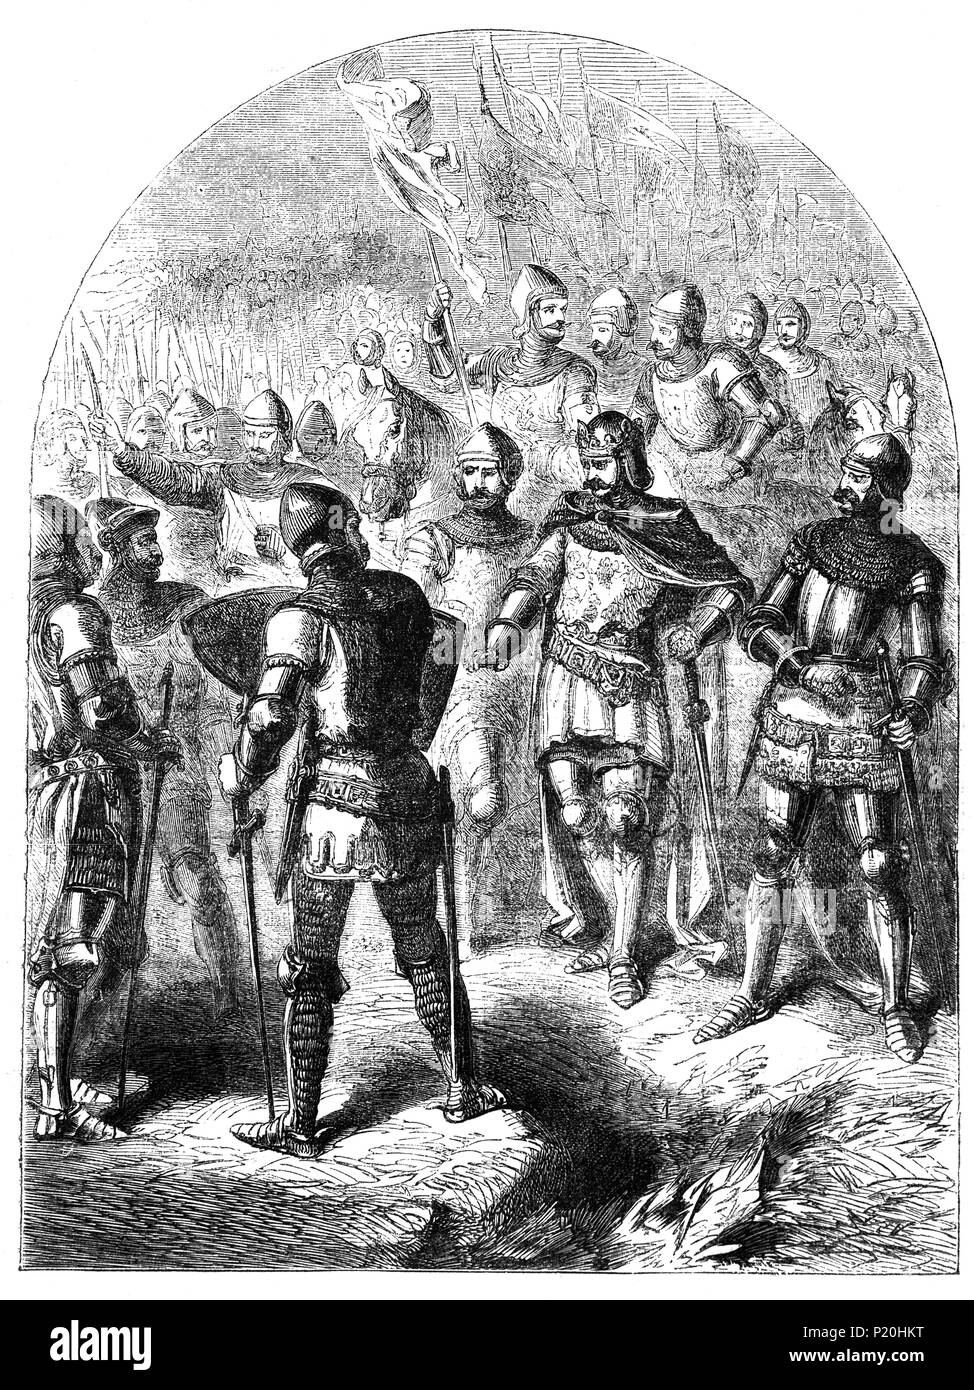 Die Schlacht von Agincourt, 25. Oktober 1415, war einer der wichtigsten englischen Sieg im Hundertjährigen Krieg, etwa 40 km südlich von Calais. Die Schlacht ist bekannt für die Verwendung des englischen Langbogen in großer Zahl, mit der englischen und walisischen Bogenschützen, die bis zu 80 Prozent von Henry's Army. Die Dezimierung der französischen Kavallerie auf ihre Hände als Indikator für den Rückgang der Kavallerie und der Beginn der Dominanz der Waffen auf dem Schlachtfeld reichten betrachtet. Stockfoto